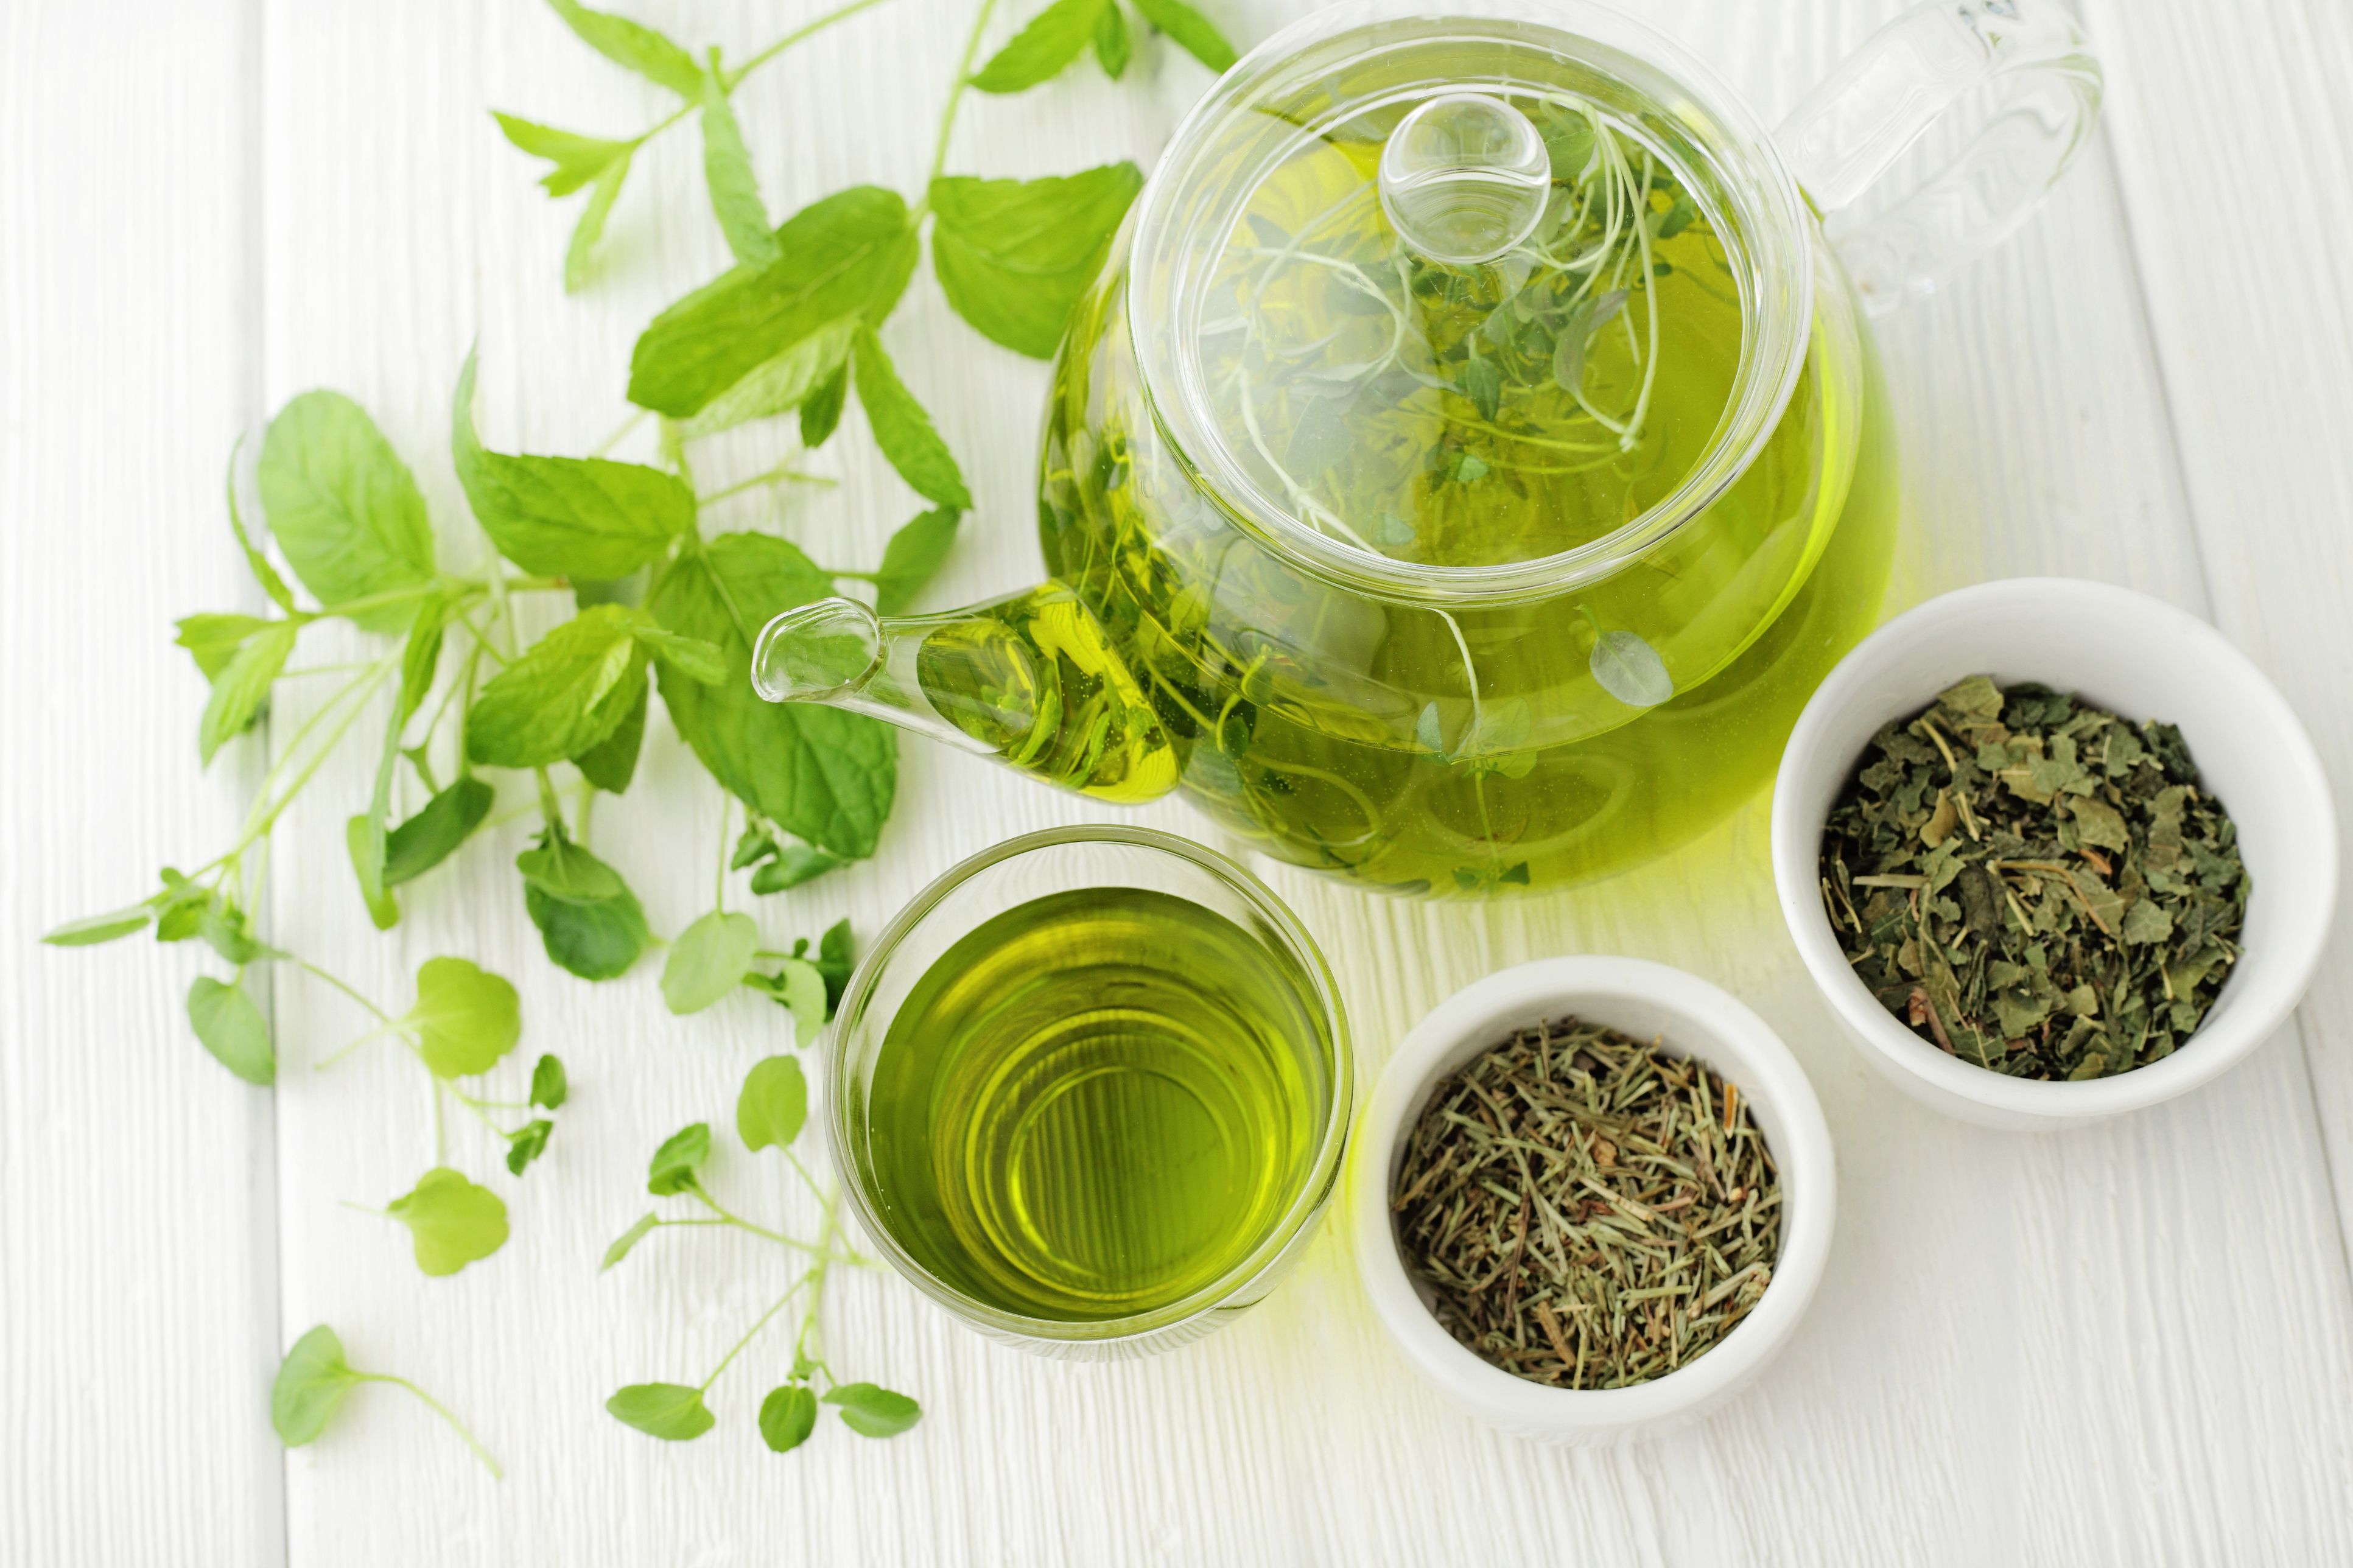 Stoffwechsel anregen mit Tee: Matcha oder Grüner Tee